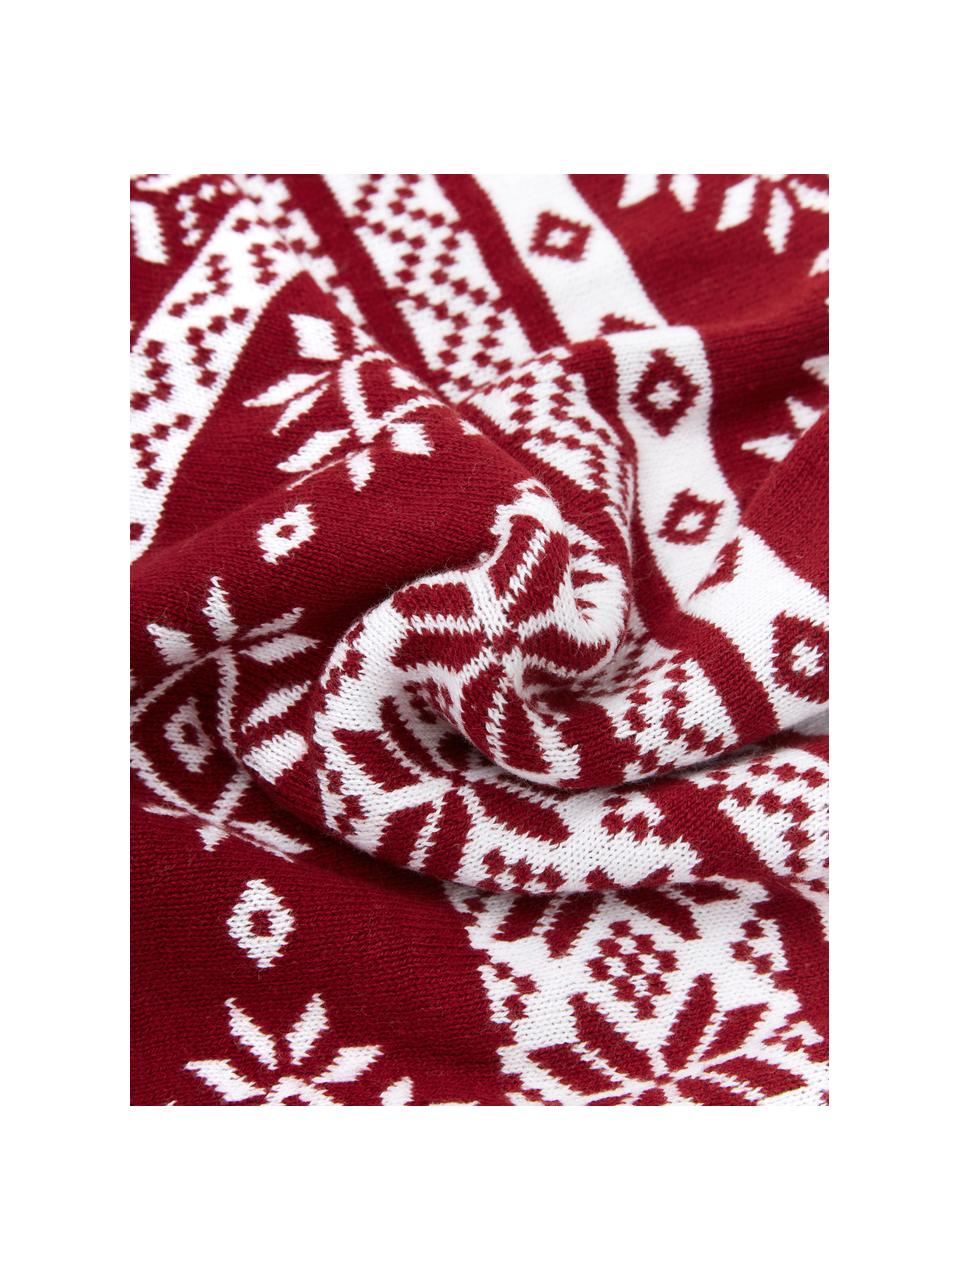 Feinstrick-Kissenhülle Frosty mit winterlichem Muster in Rot/Weiss, 100% Baumwolle, Dunkelrot, Cremeweiss, 30 x 50 cm